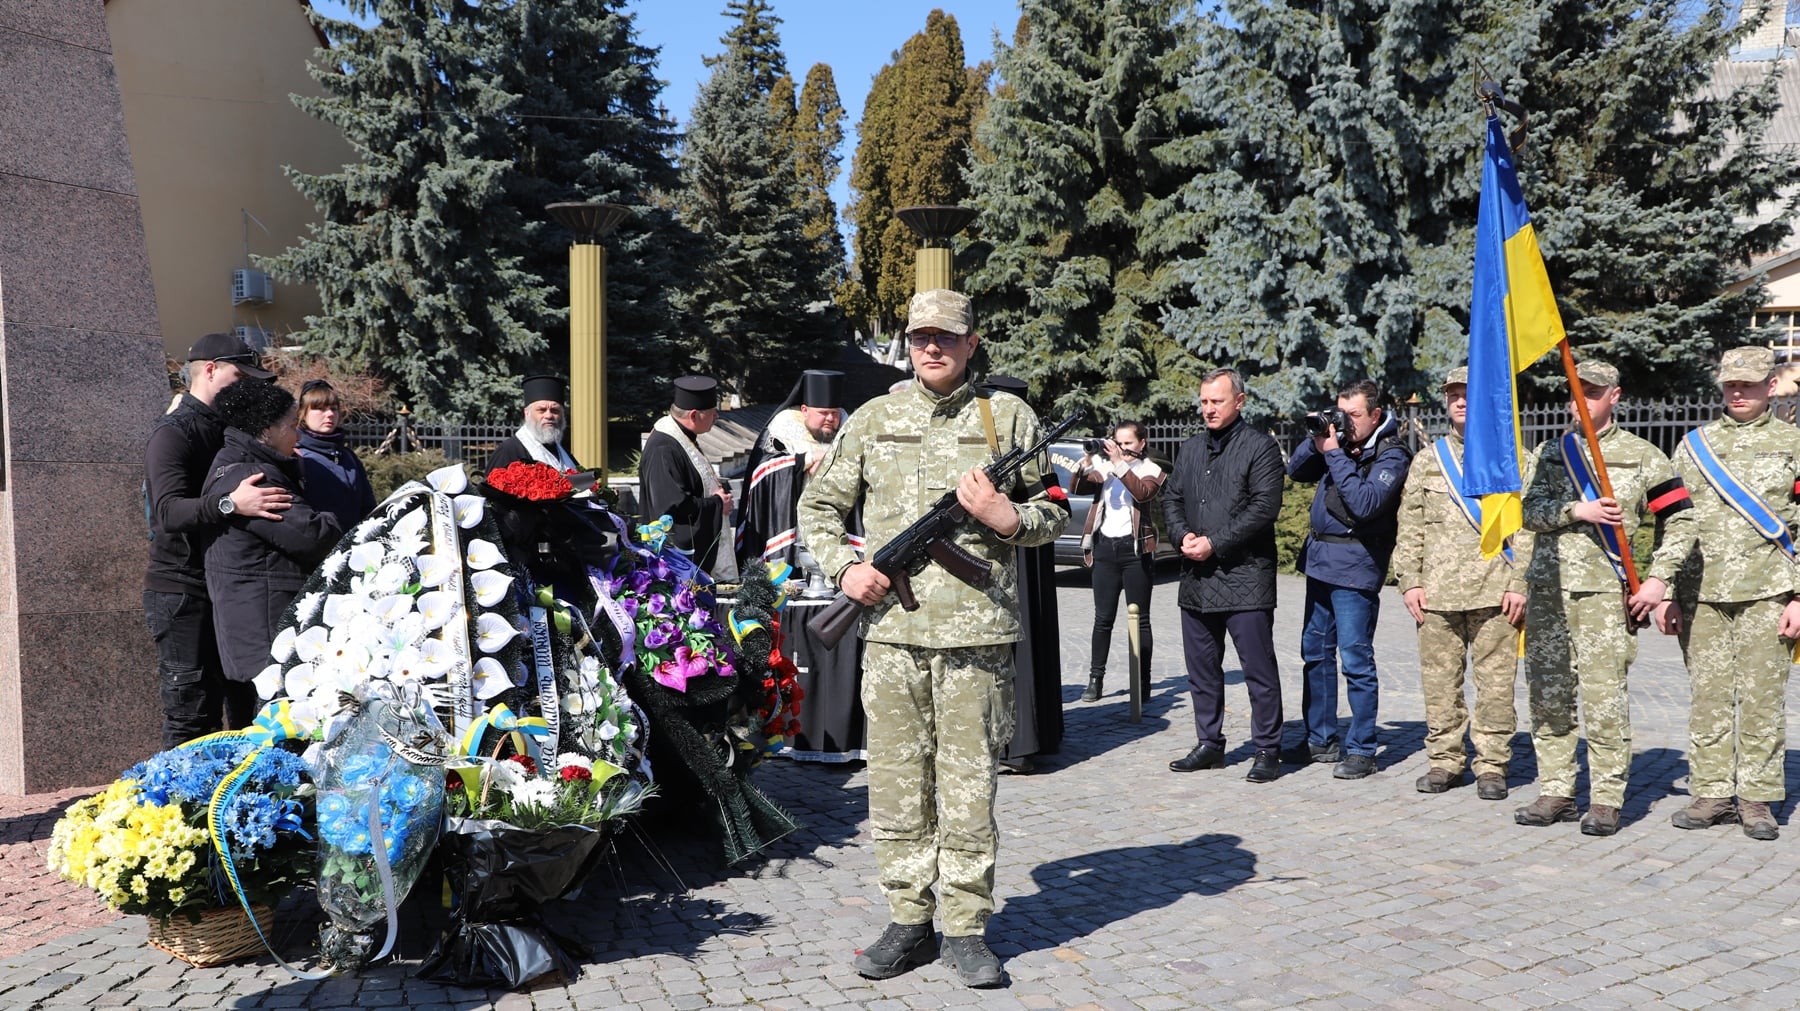 29-летний военнослужащий, венгр по национальности, служил в ВМС Украины и погиб в Очакове Николаевской области в первый день российской агрессии, 24 февраля.